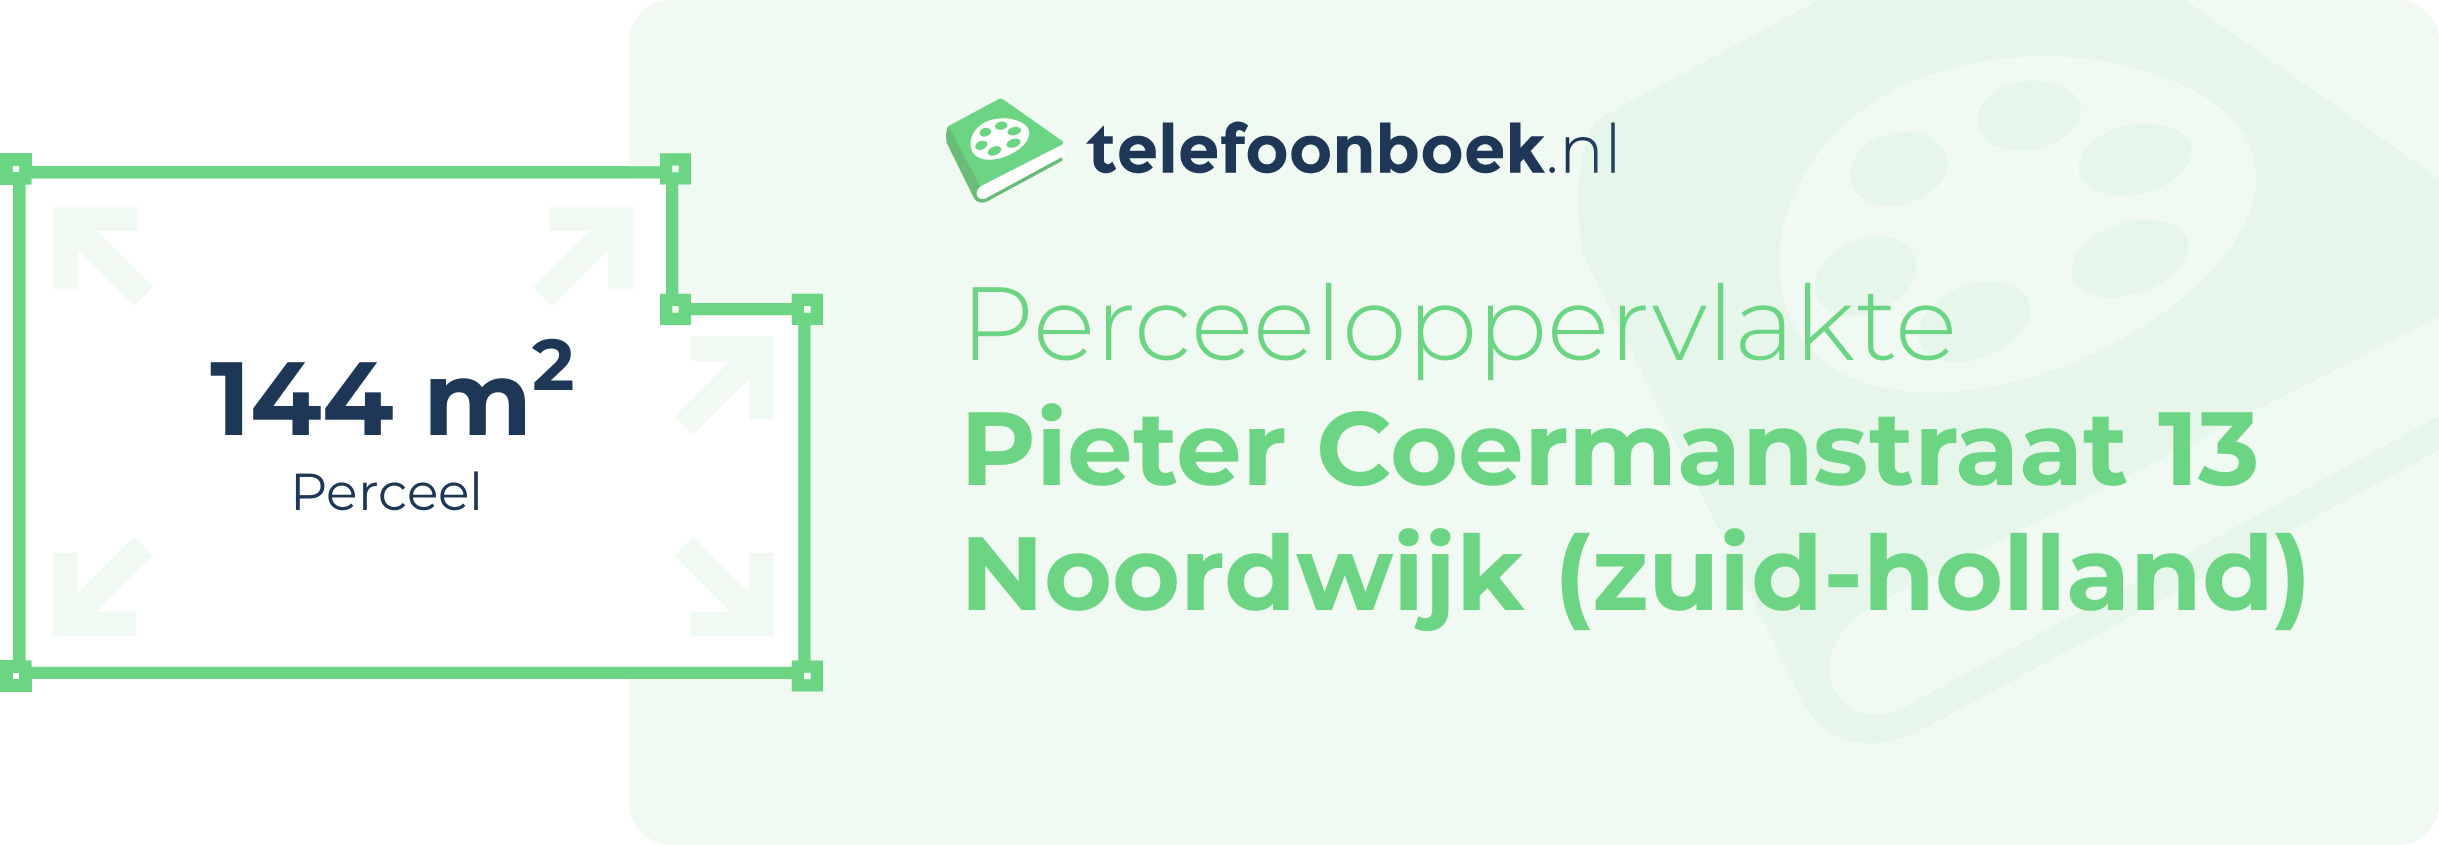 Perceeloppervlakte Pieter Coermanstraat 13 Noordwijk (Zuid-Holland)